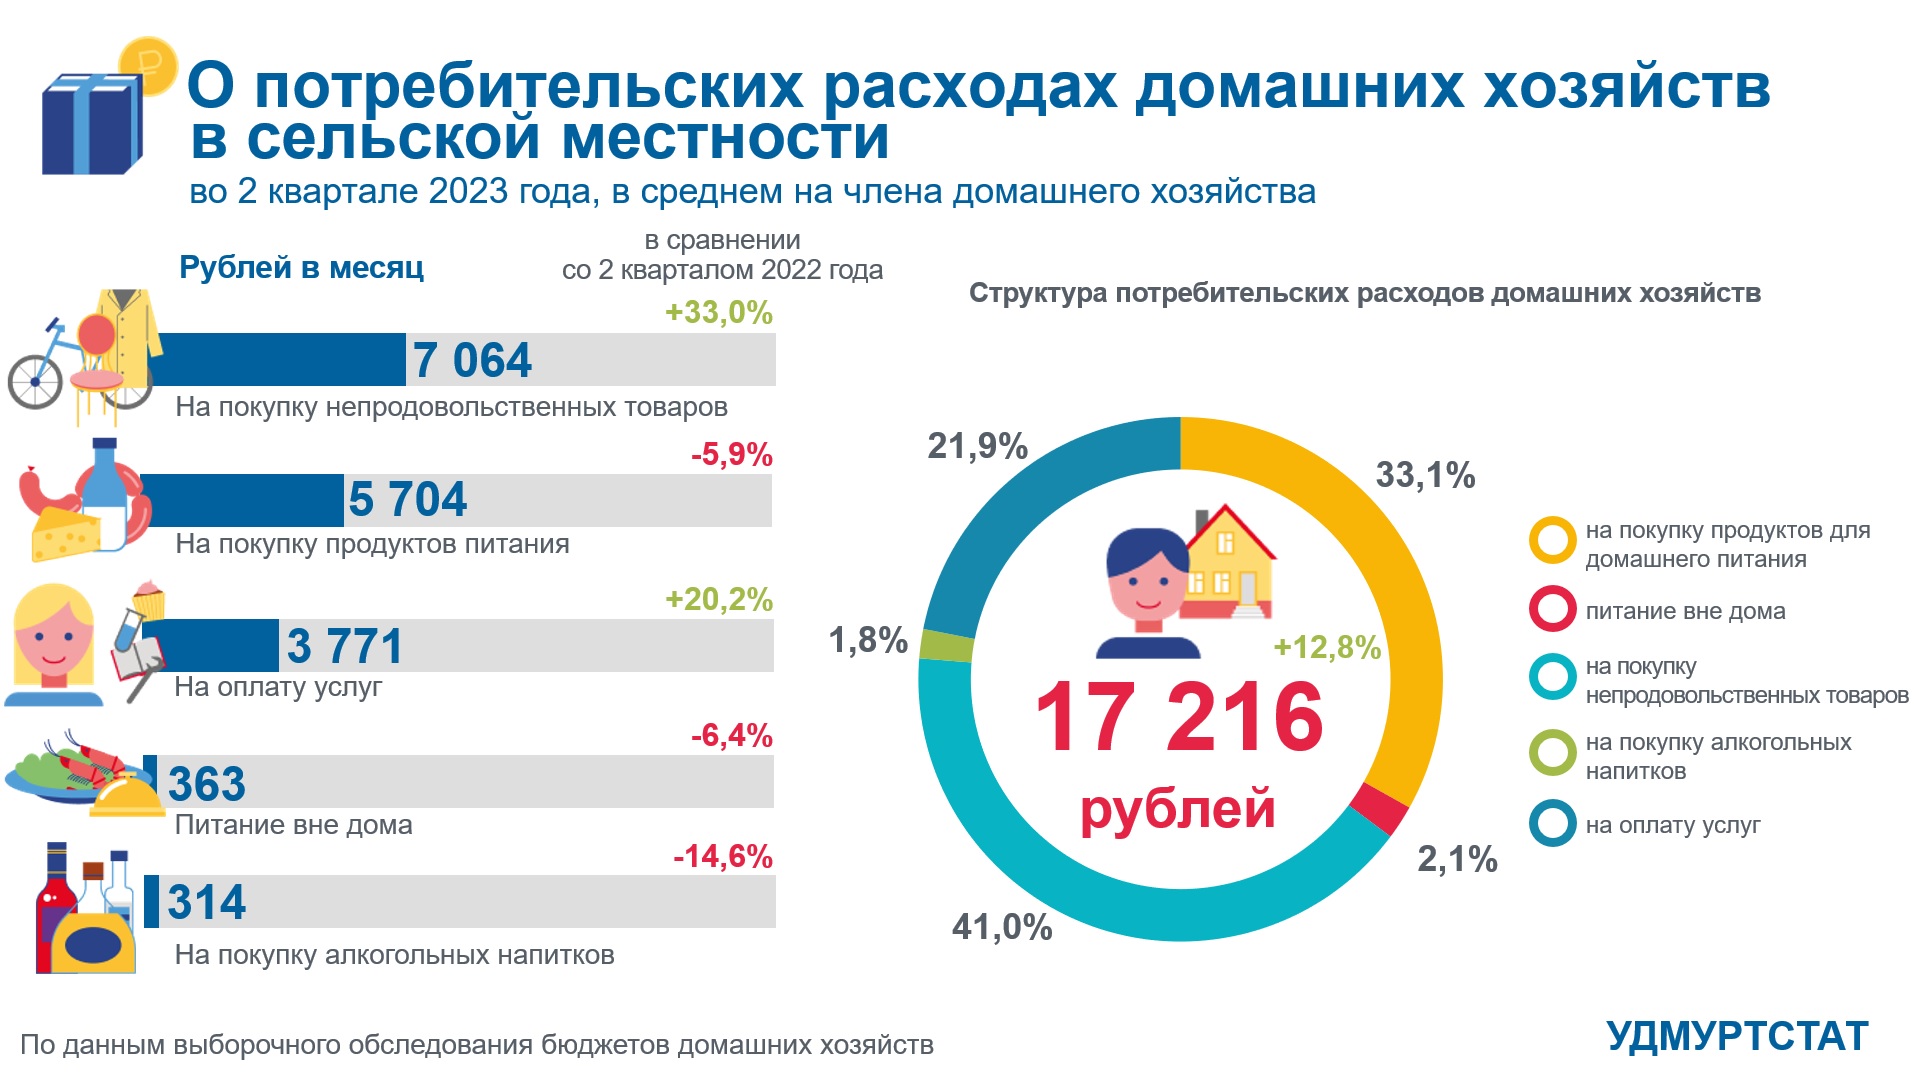 О потребительских расходах домашних хозяйств во 2 квартале 2023 года (село).